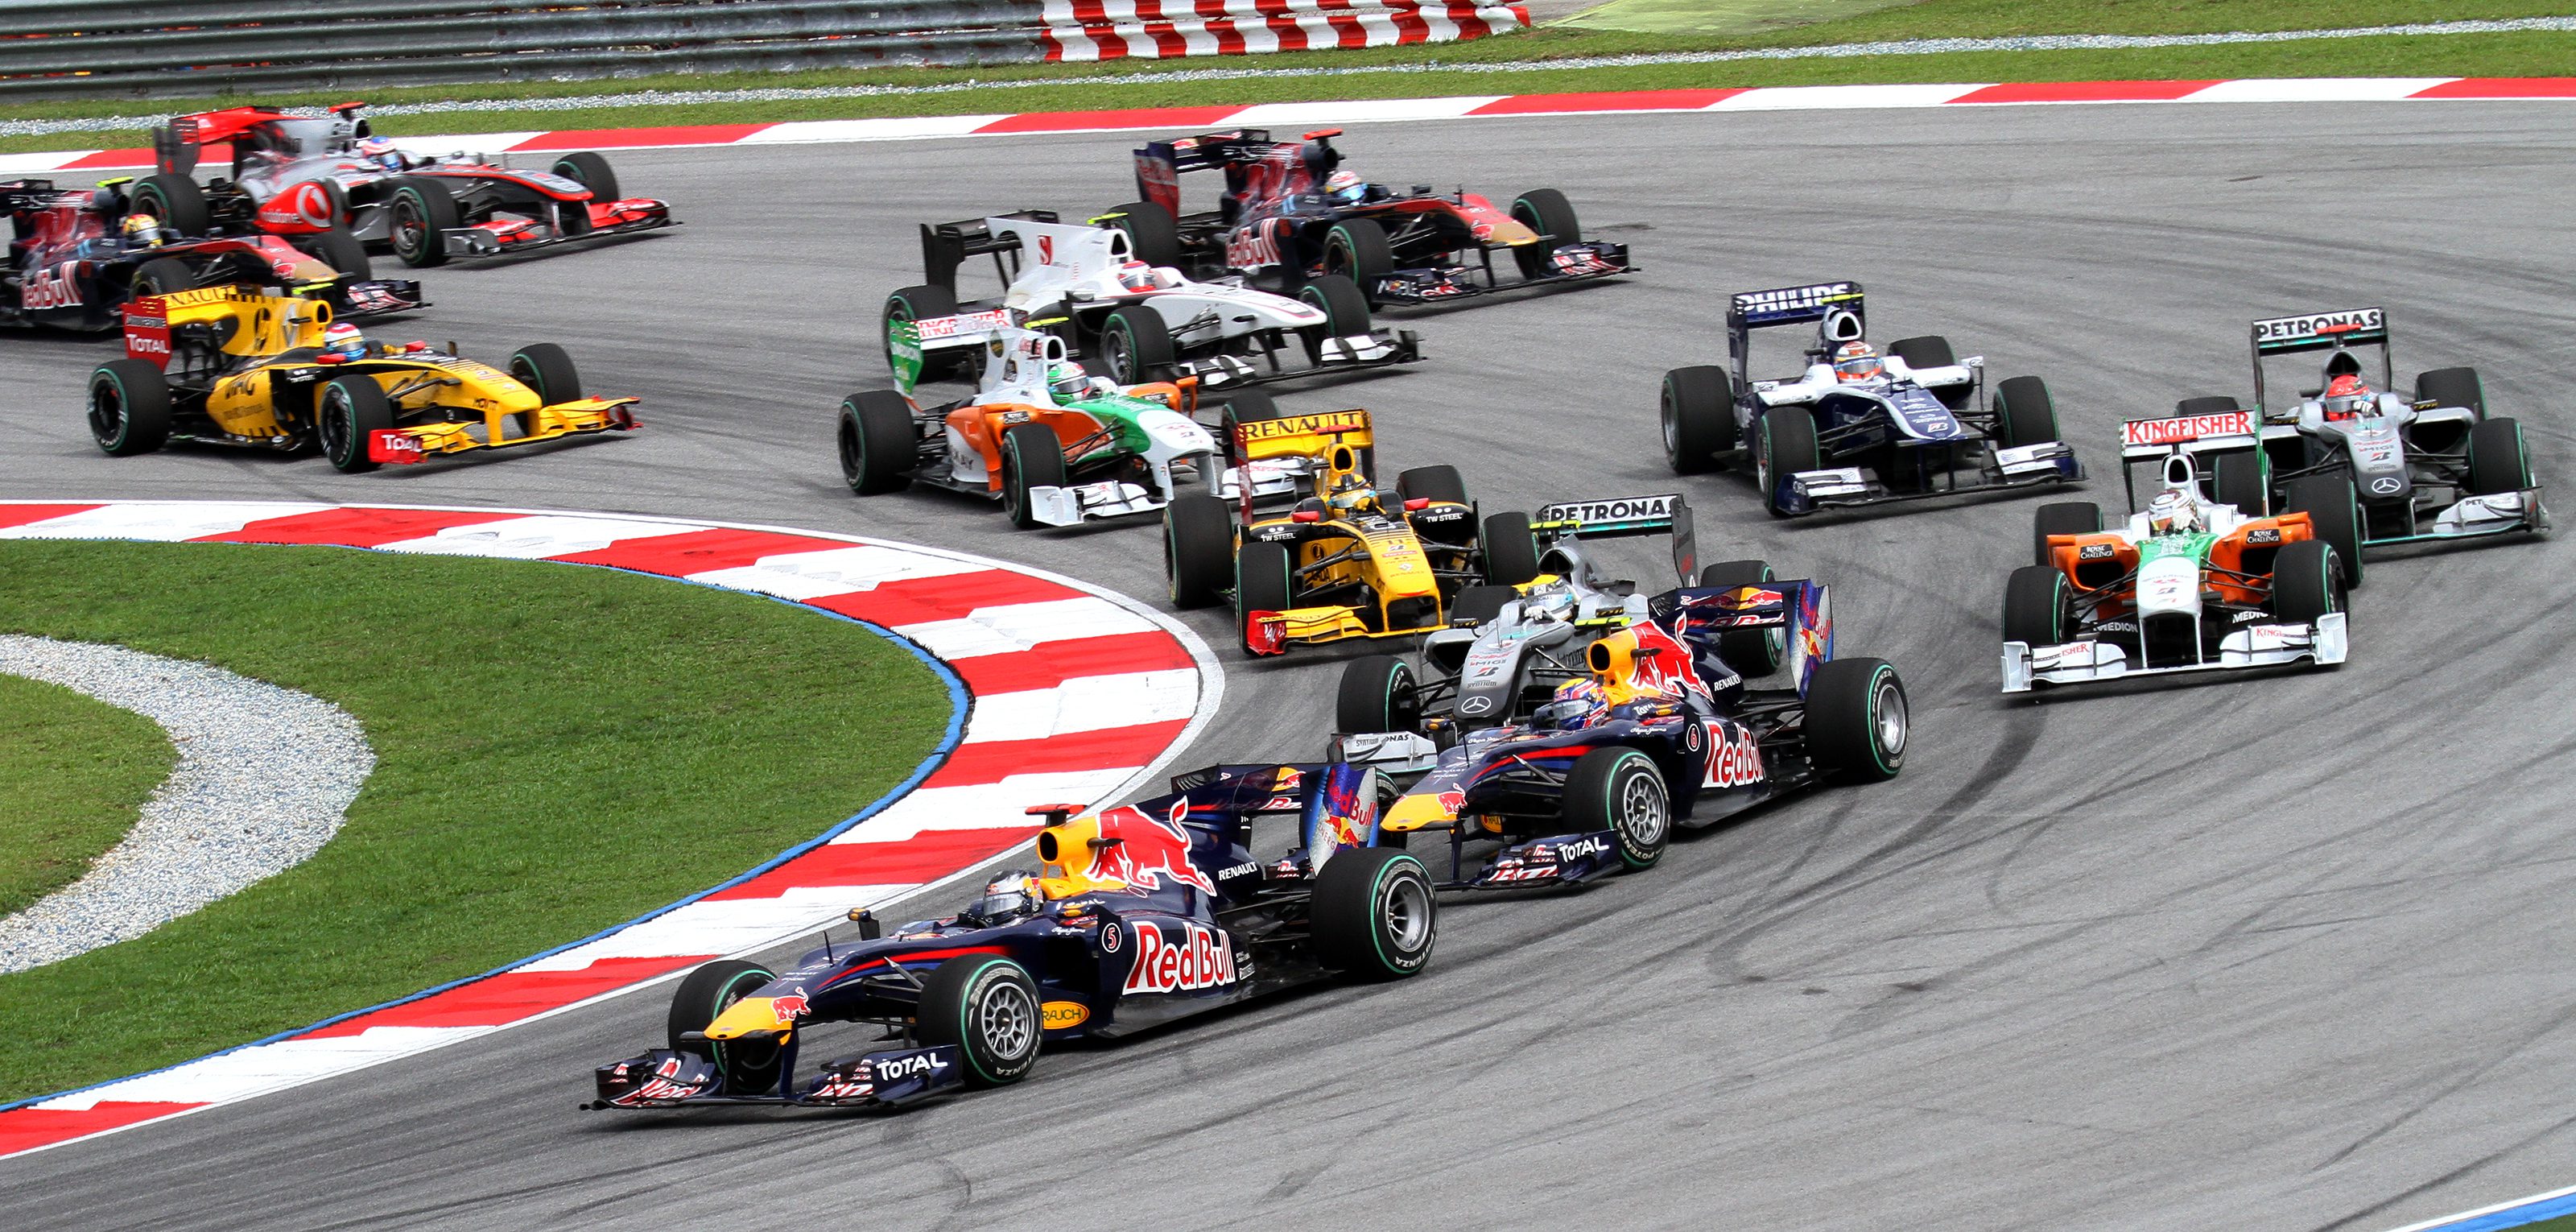 Wint Verstappen na Grand Prix Maleisië weer in Japan?